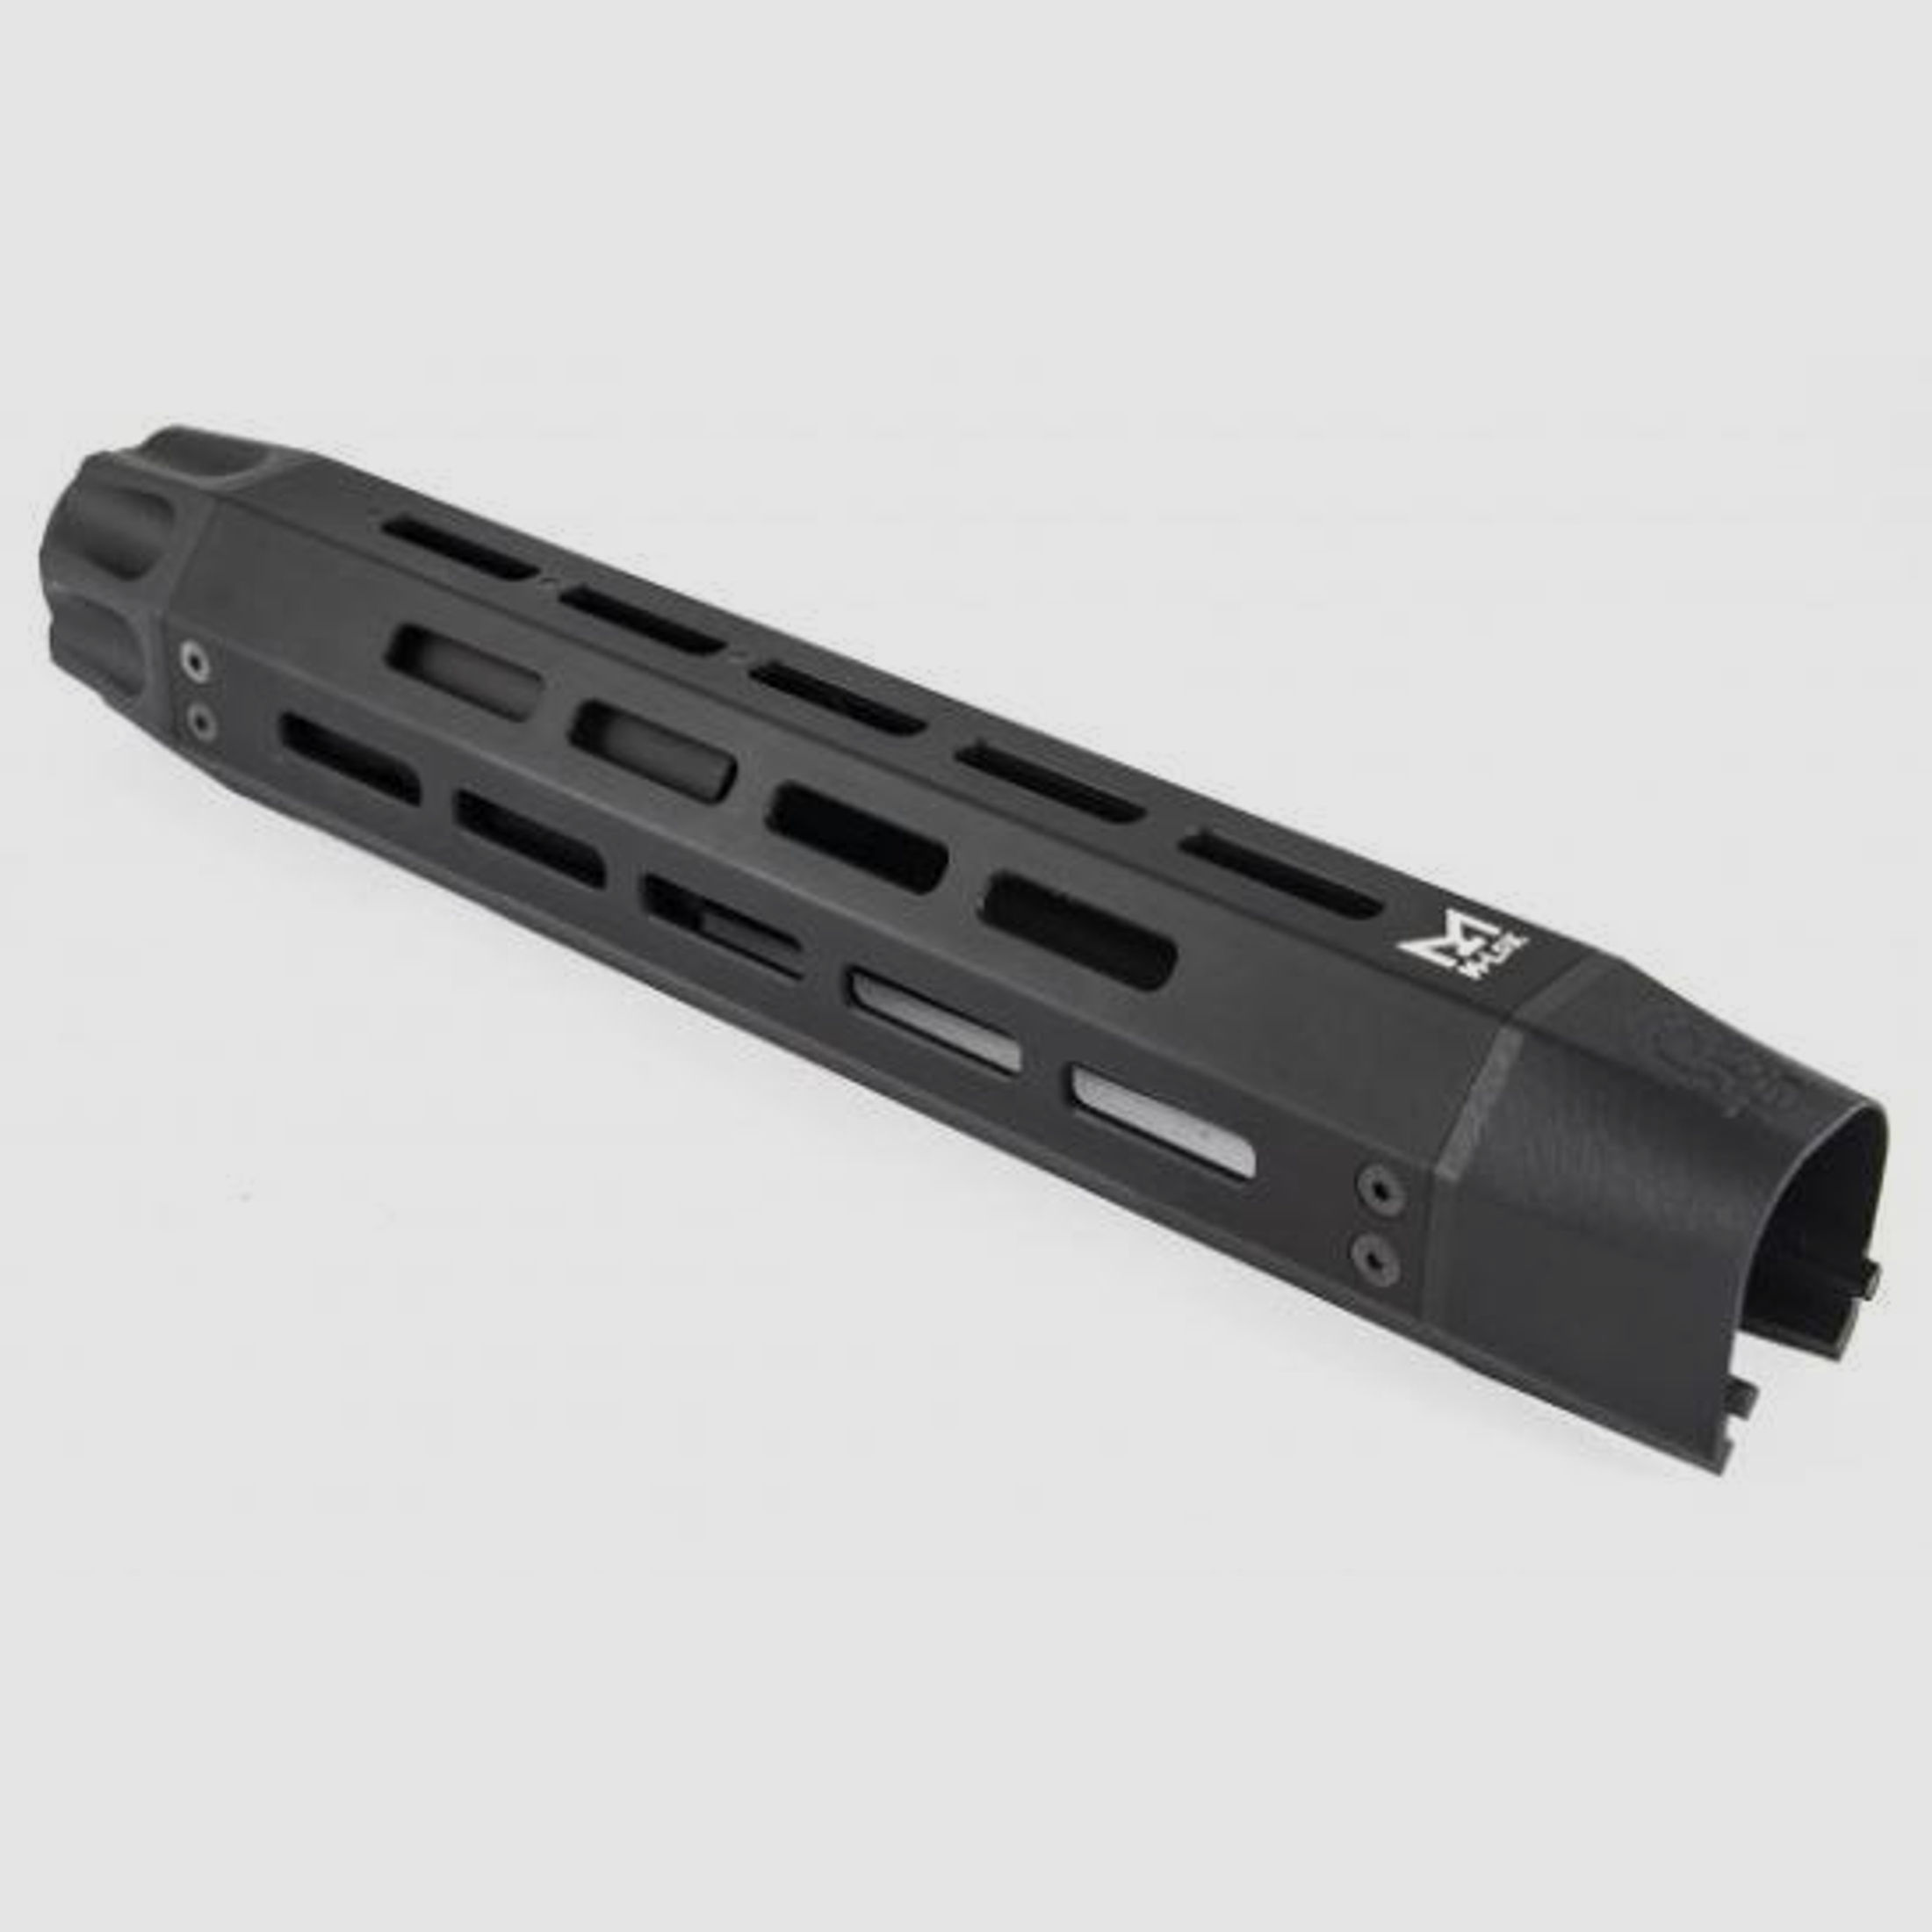 Toni System Schaft M-LOK Handschutz für Beretta 1301 Comp